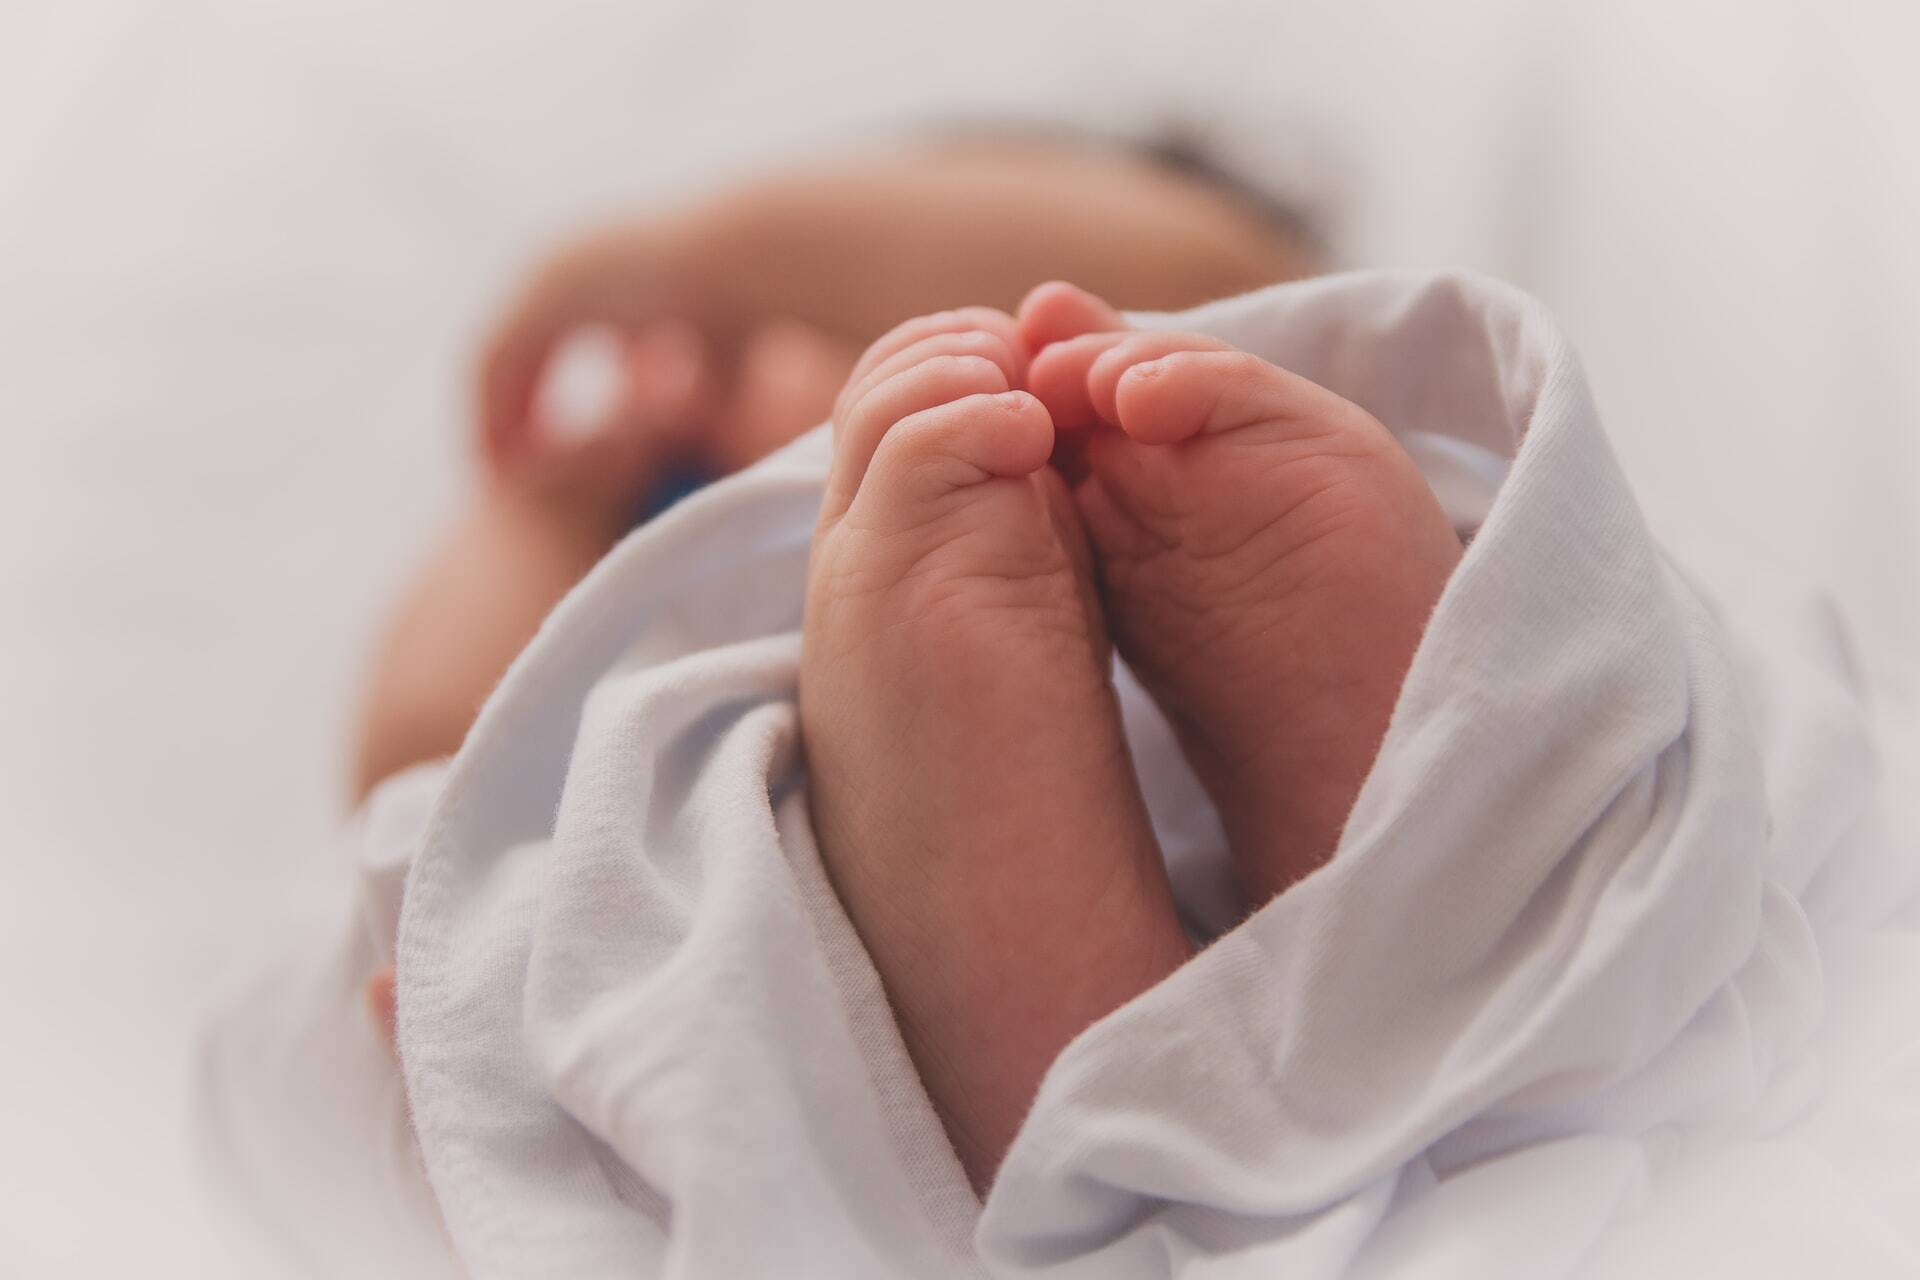 Um terço dos recém nascidos infectados com Covid-19 contraíram a doença antes ou durante o nascimento